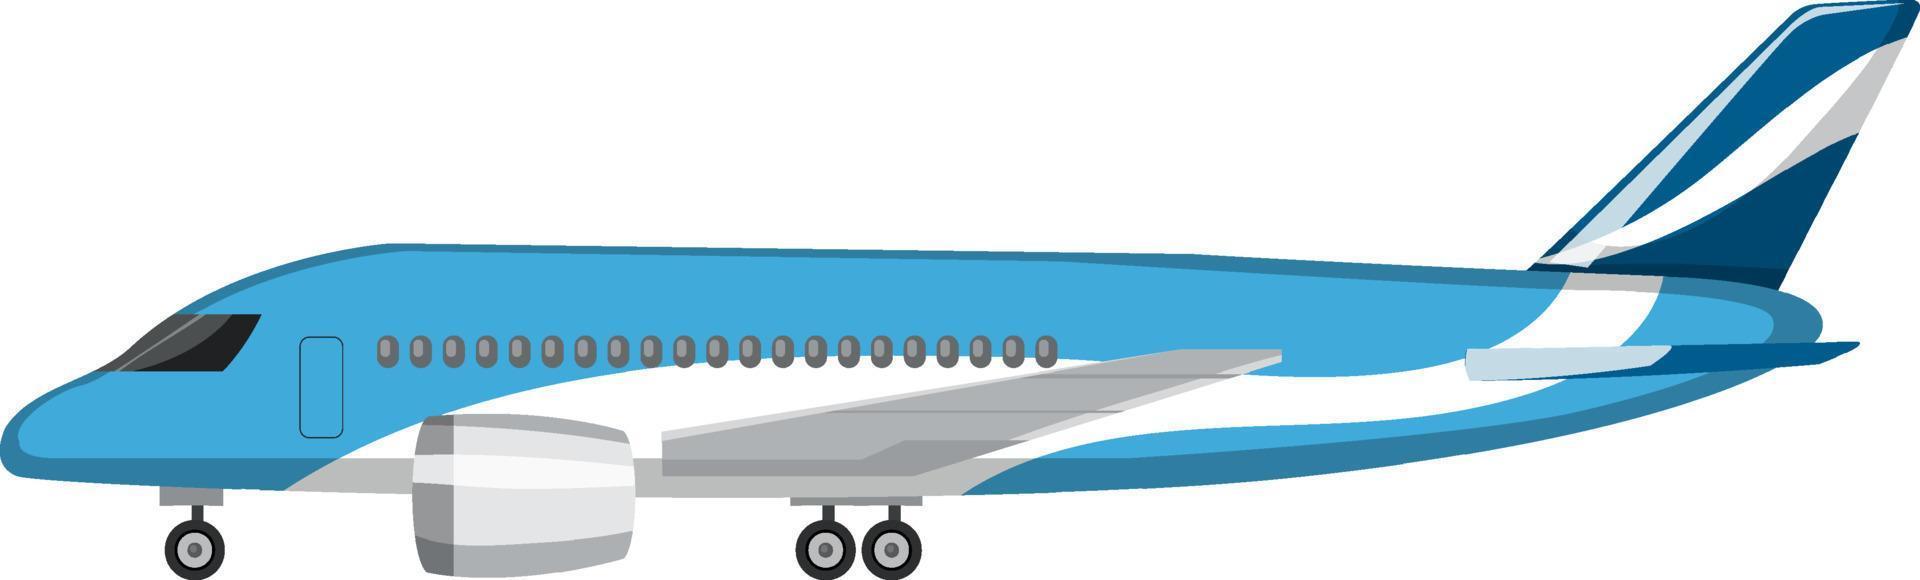 flygplan i tecknad stil på vit bakgrund vektor